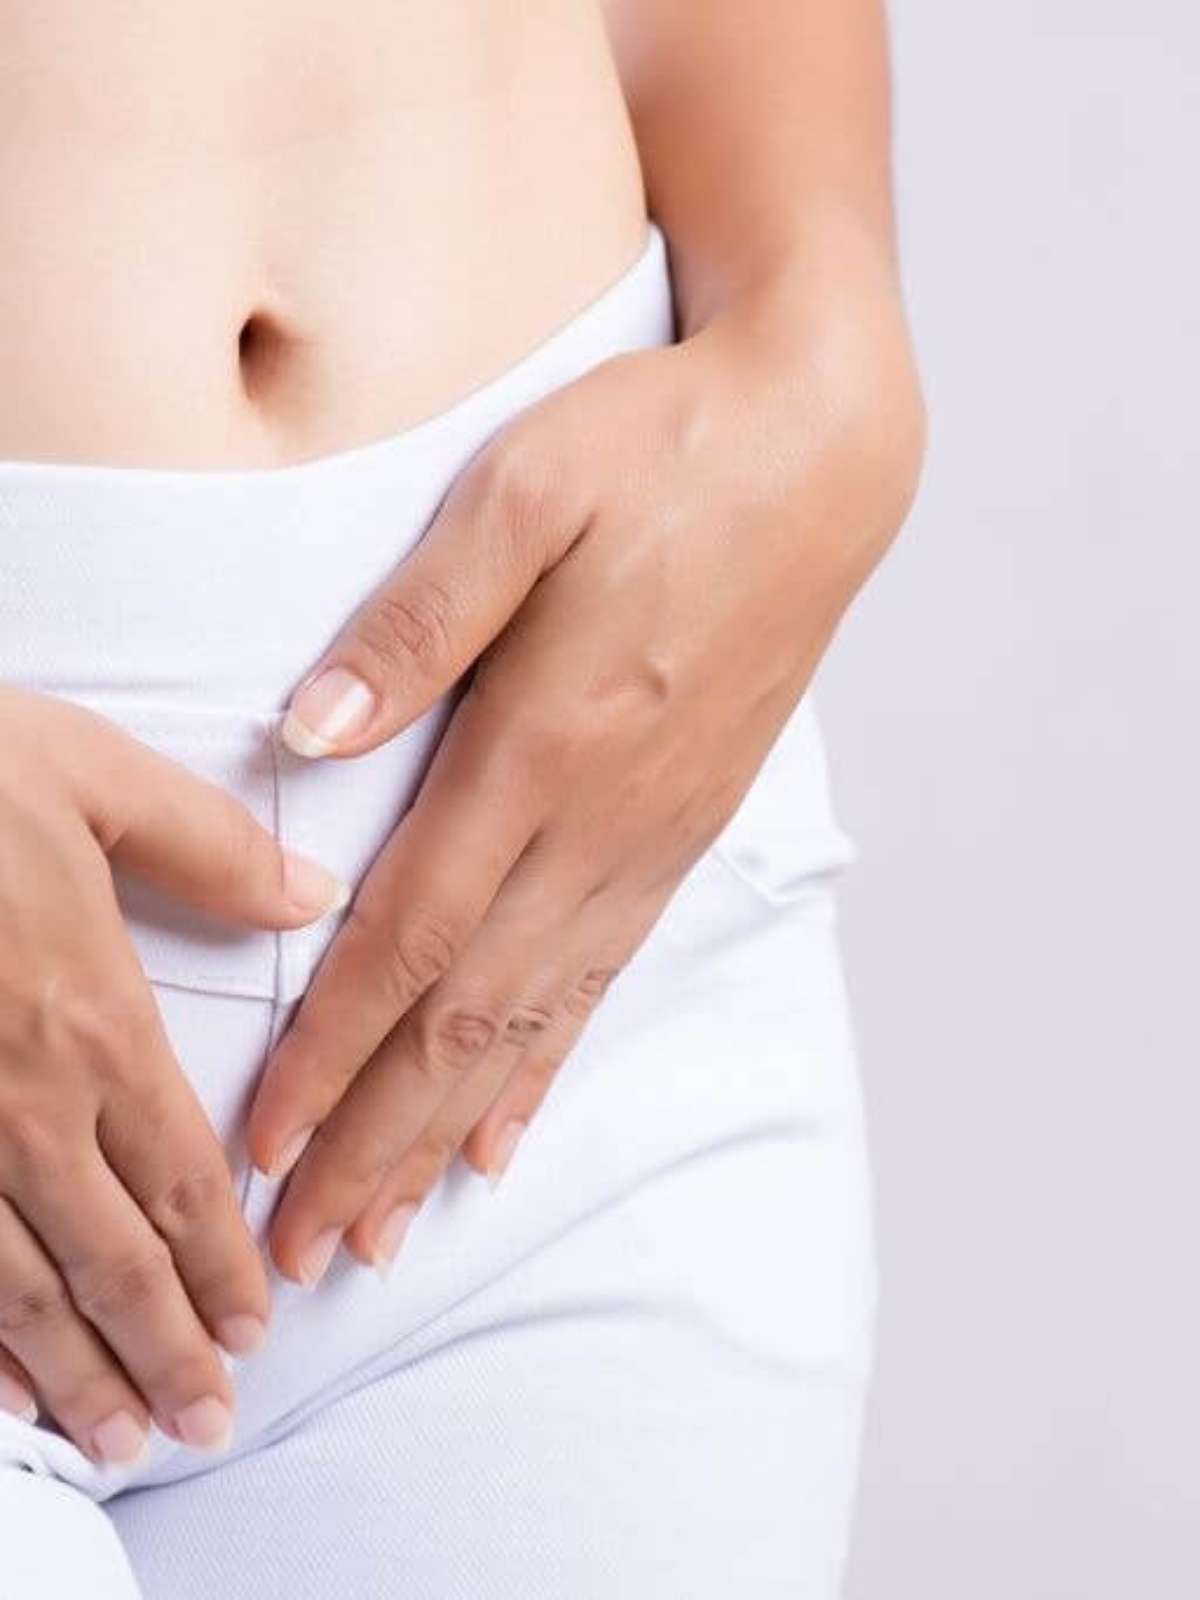 Corrimento branco vaginal sinaliza chance de engravidar foto foto